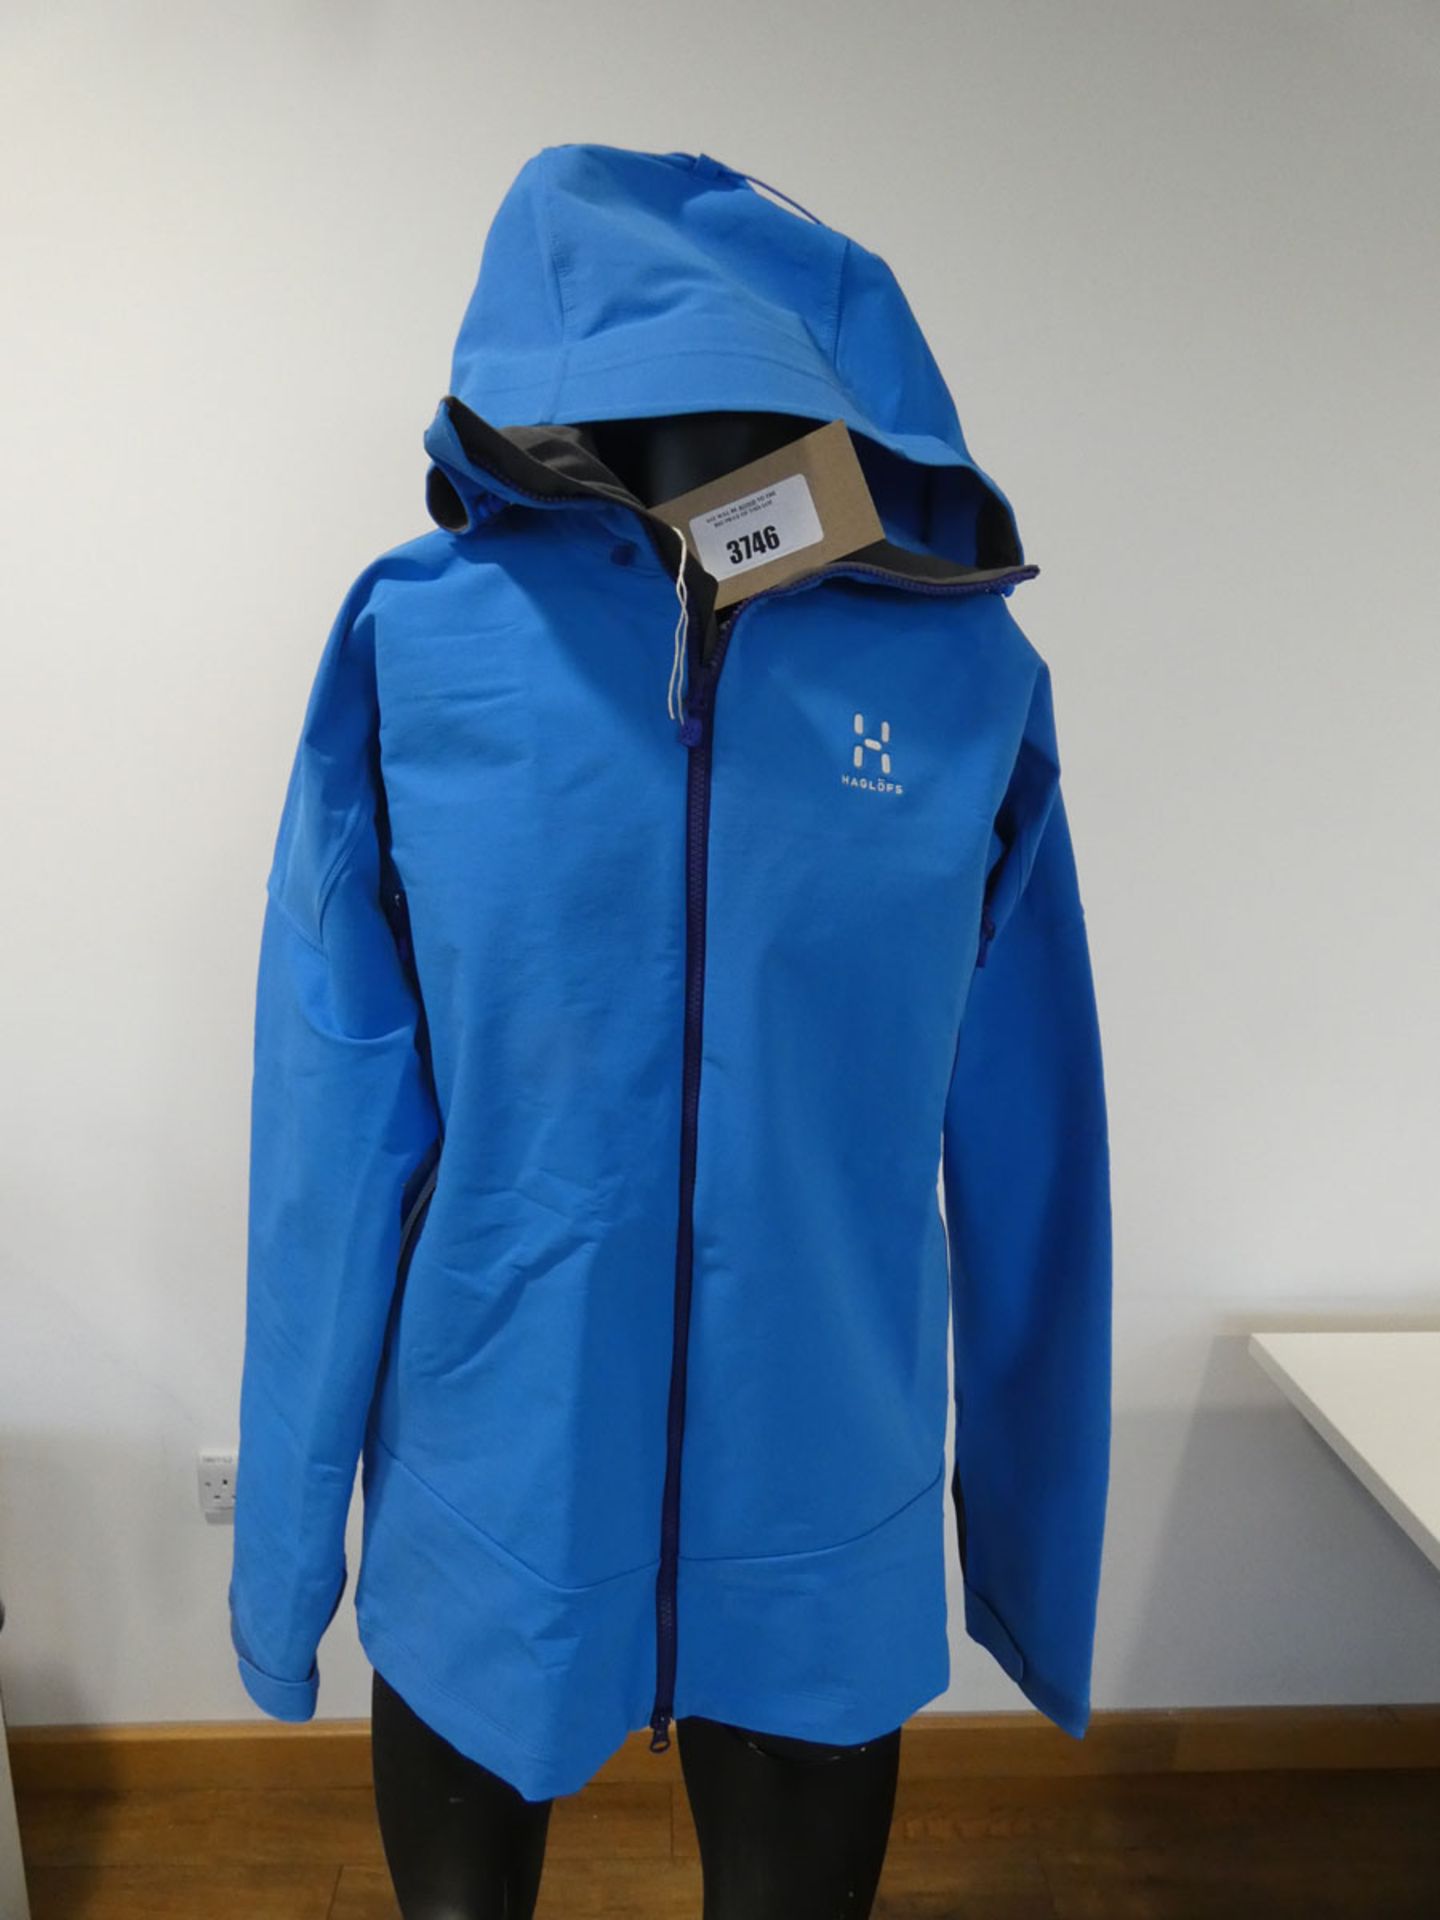 Haglofs men's skarn winter jacket in blue size XL ( Mannequin not included)